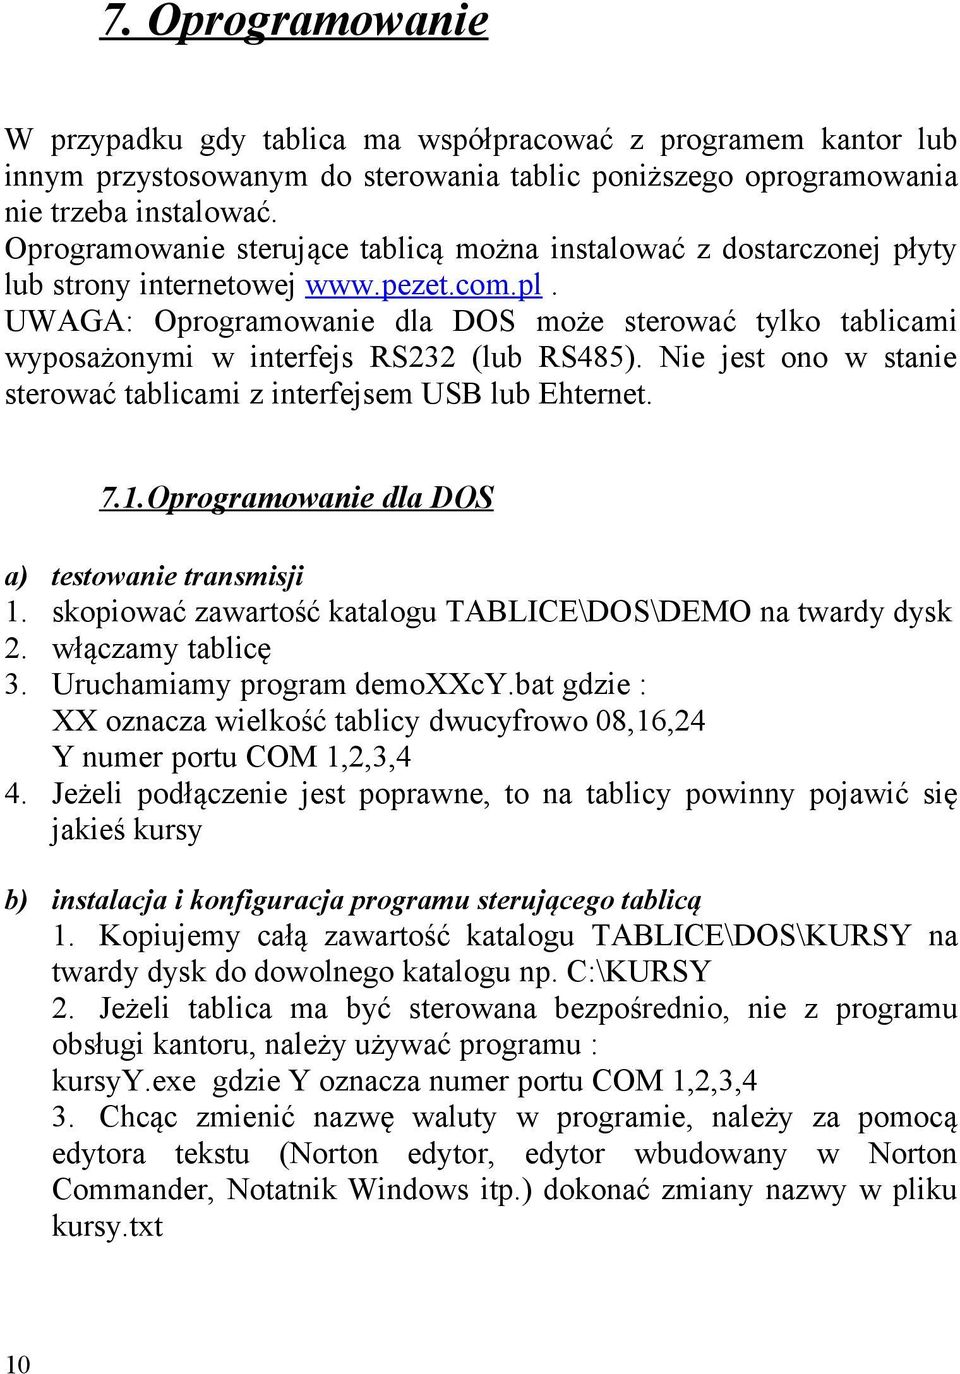 UWAGA: Oprogramowanie dla DOS może sterować tylko tablicami wyposażonymi w interfejs RS232 (lub RS485). Nie jest ono w stanie sterować tablicami z interfejsem USB lub Ehternet. 7.1.